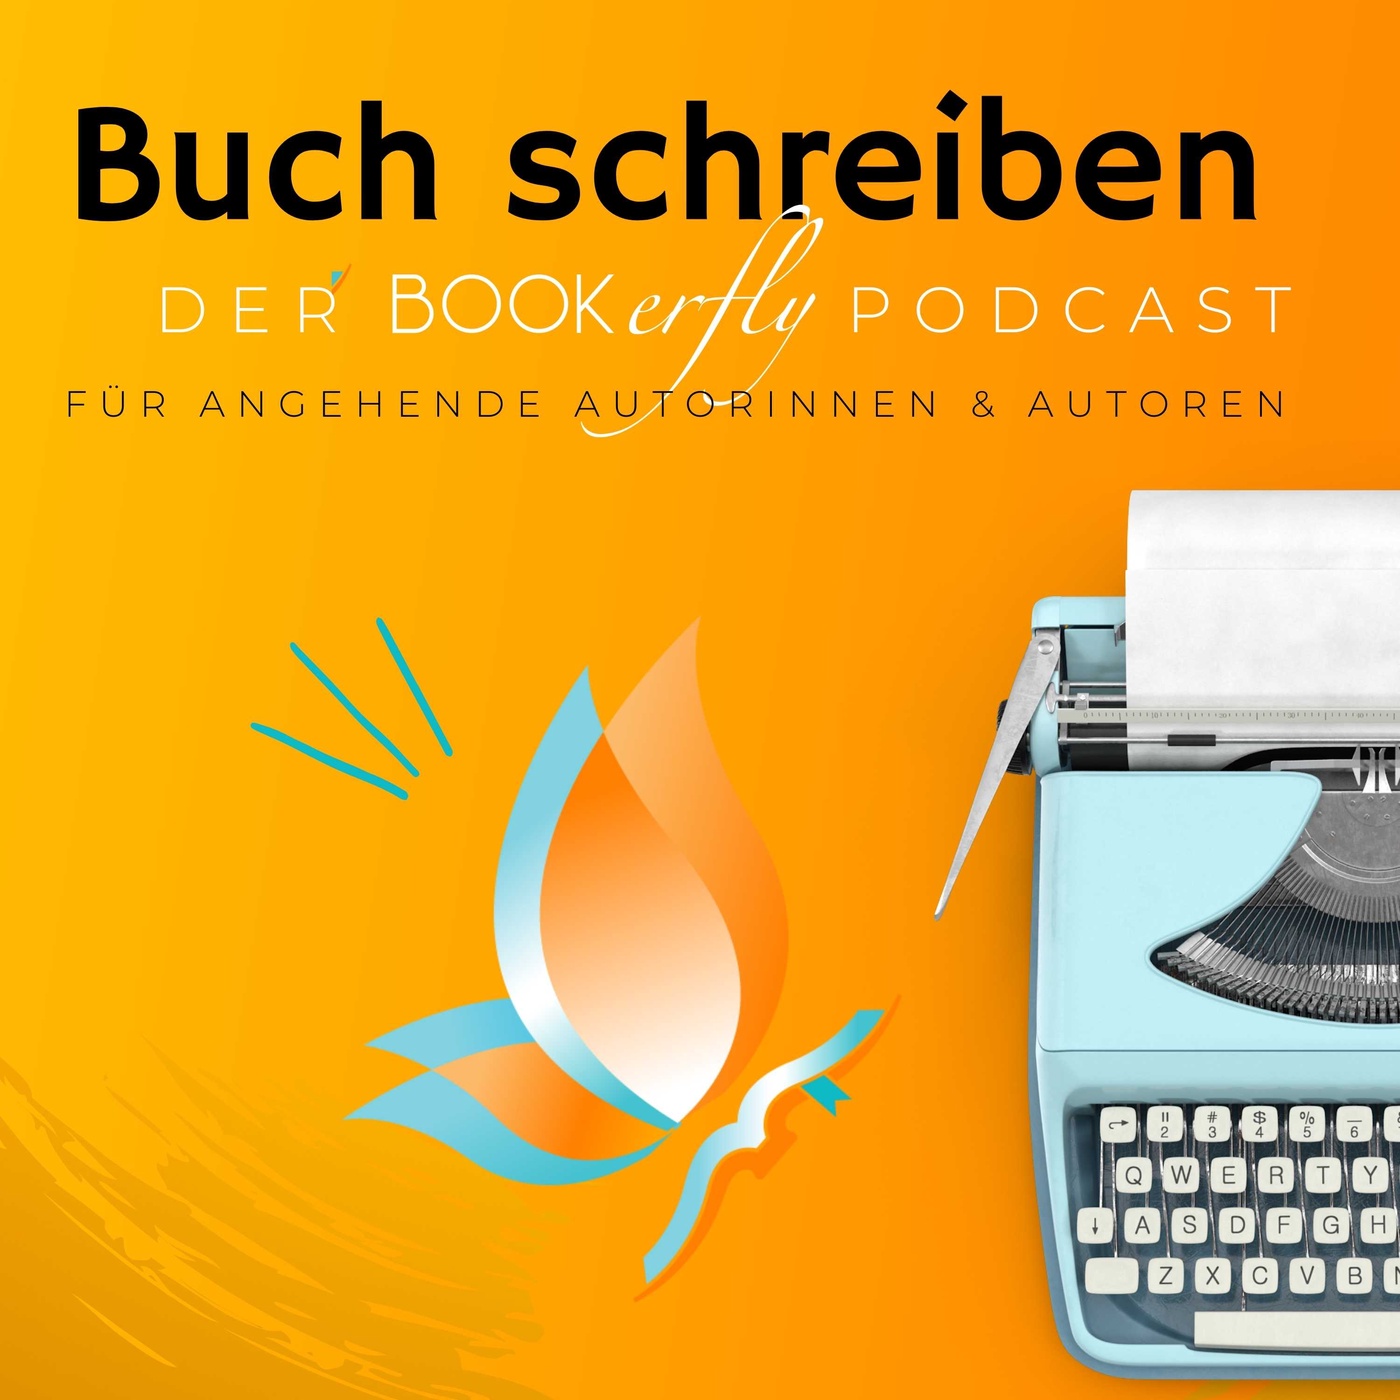 BUCH SCHREIBEN - Der Bookerfly Podcast für angehende Autorinnen & Autoren